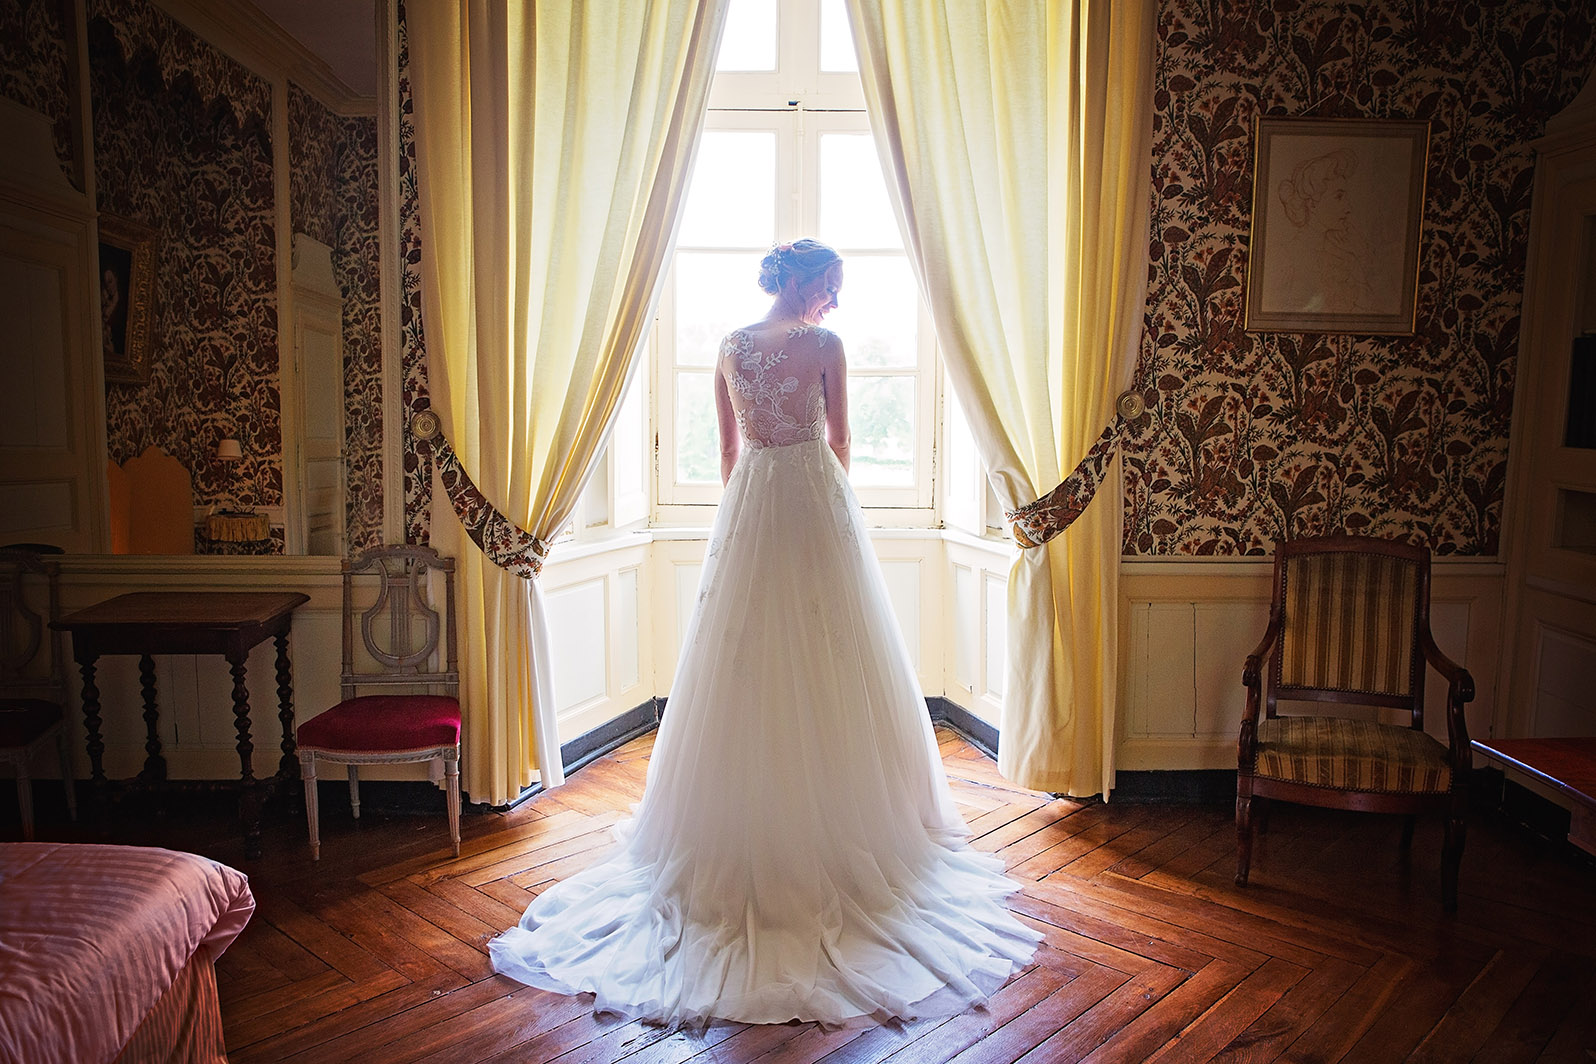 Photographe de mariage à Châteaudun. Reportage de mariage : les préparatifs de la mariée (par Aurélie Coquan photographe)